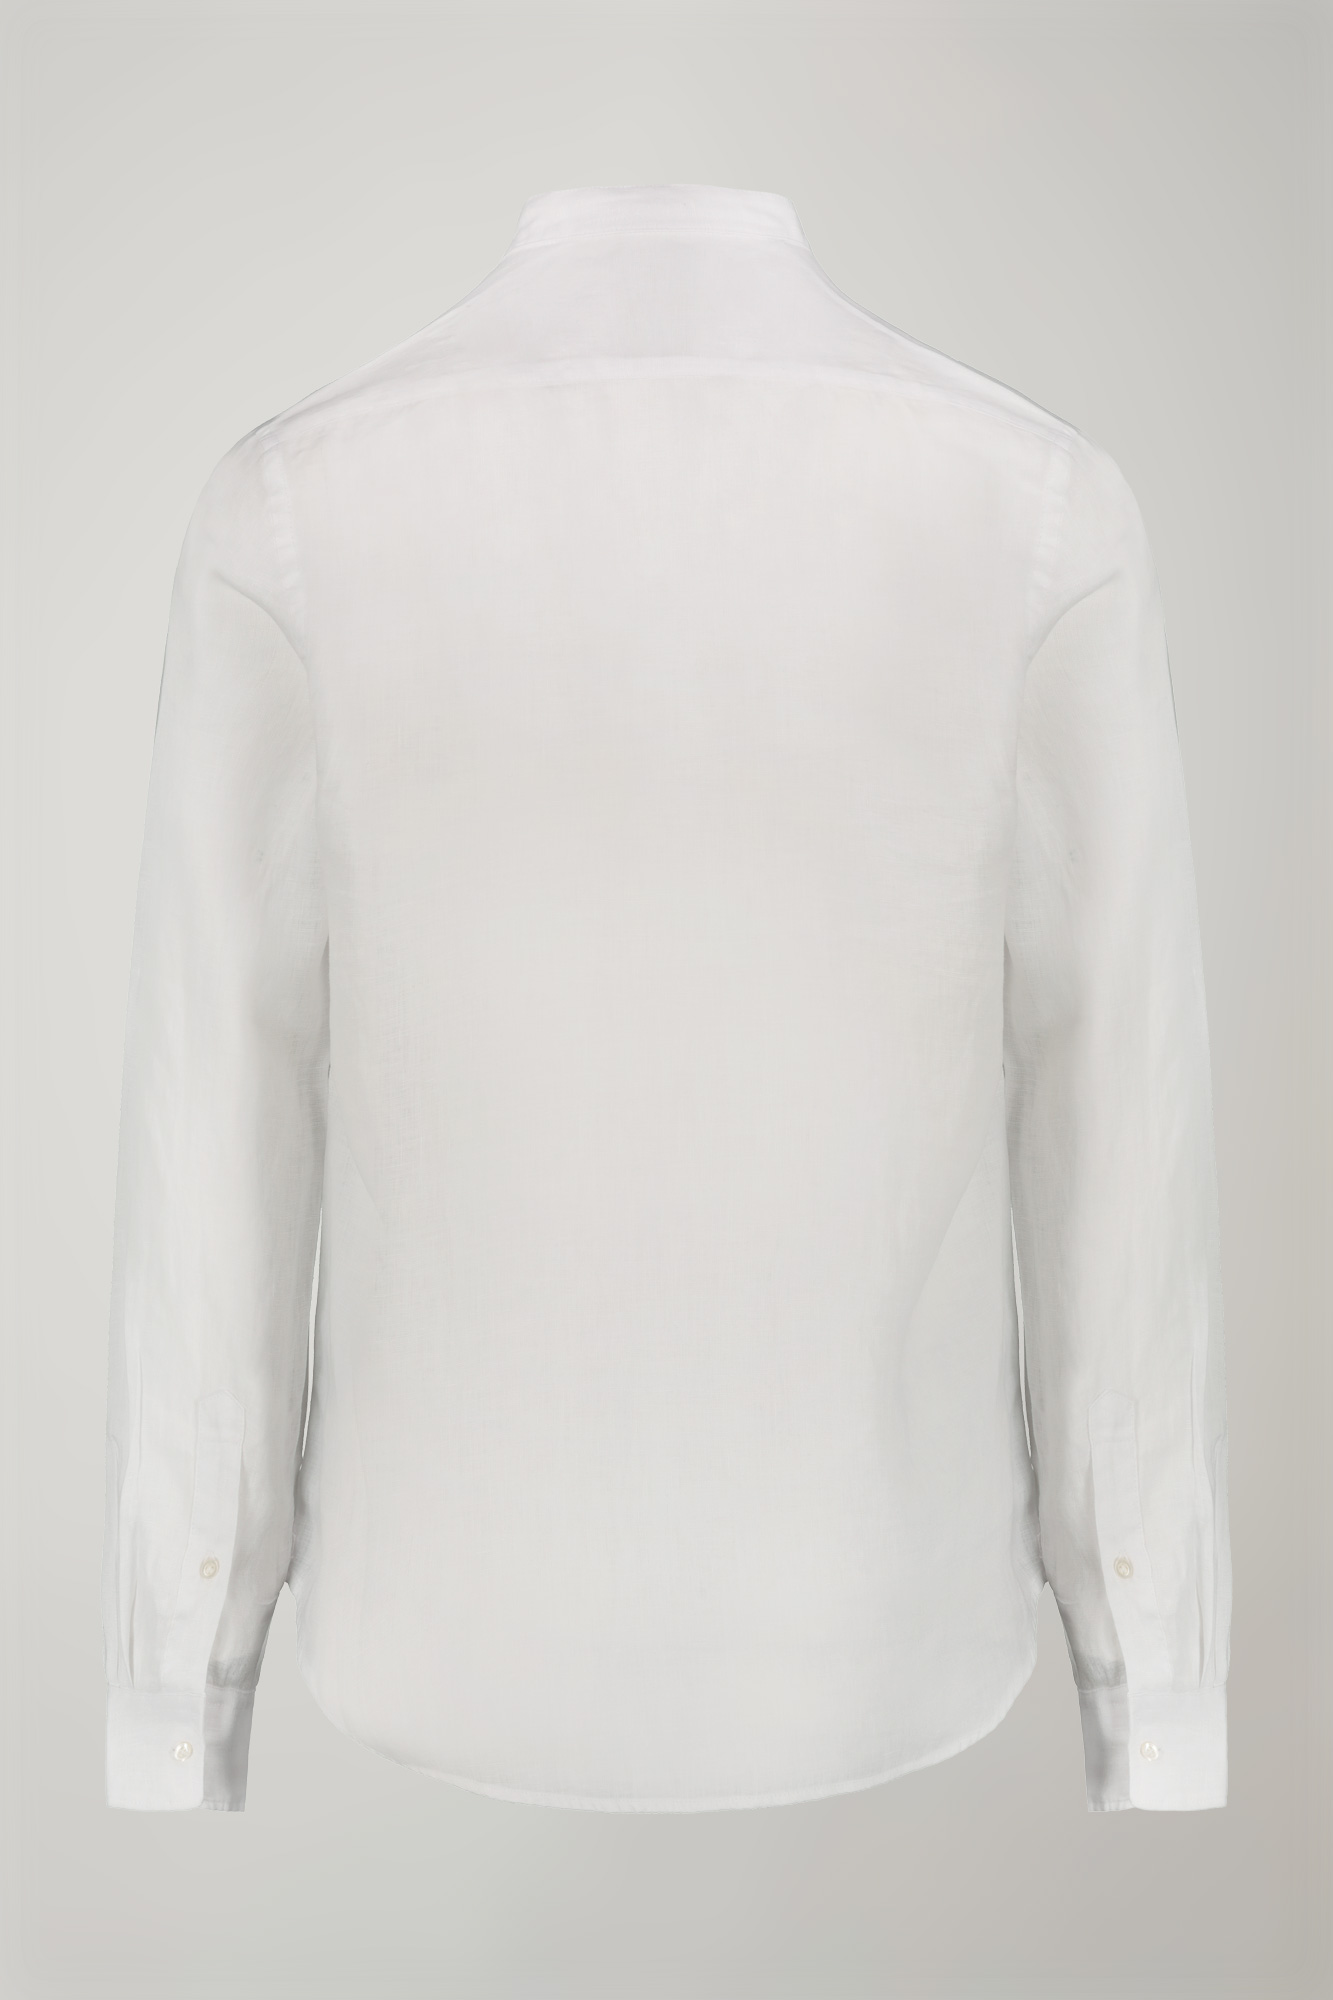 Camicia casual uomo collo coreano 100% lino comfort fit image number null